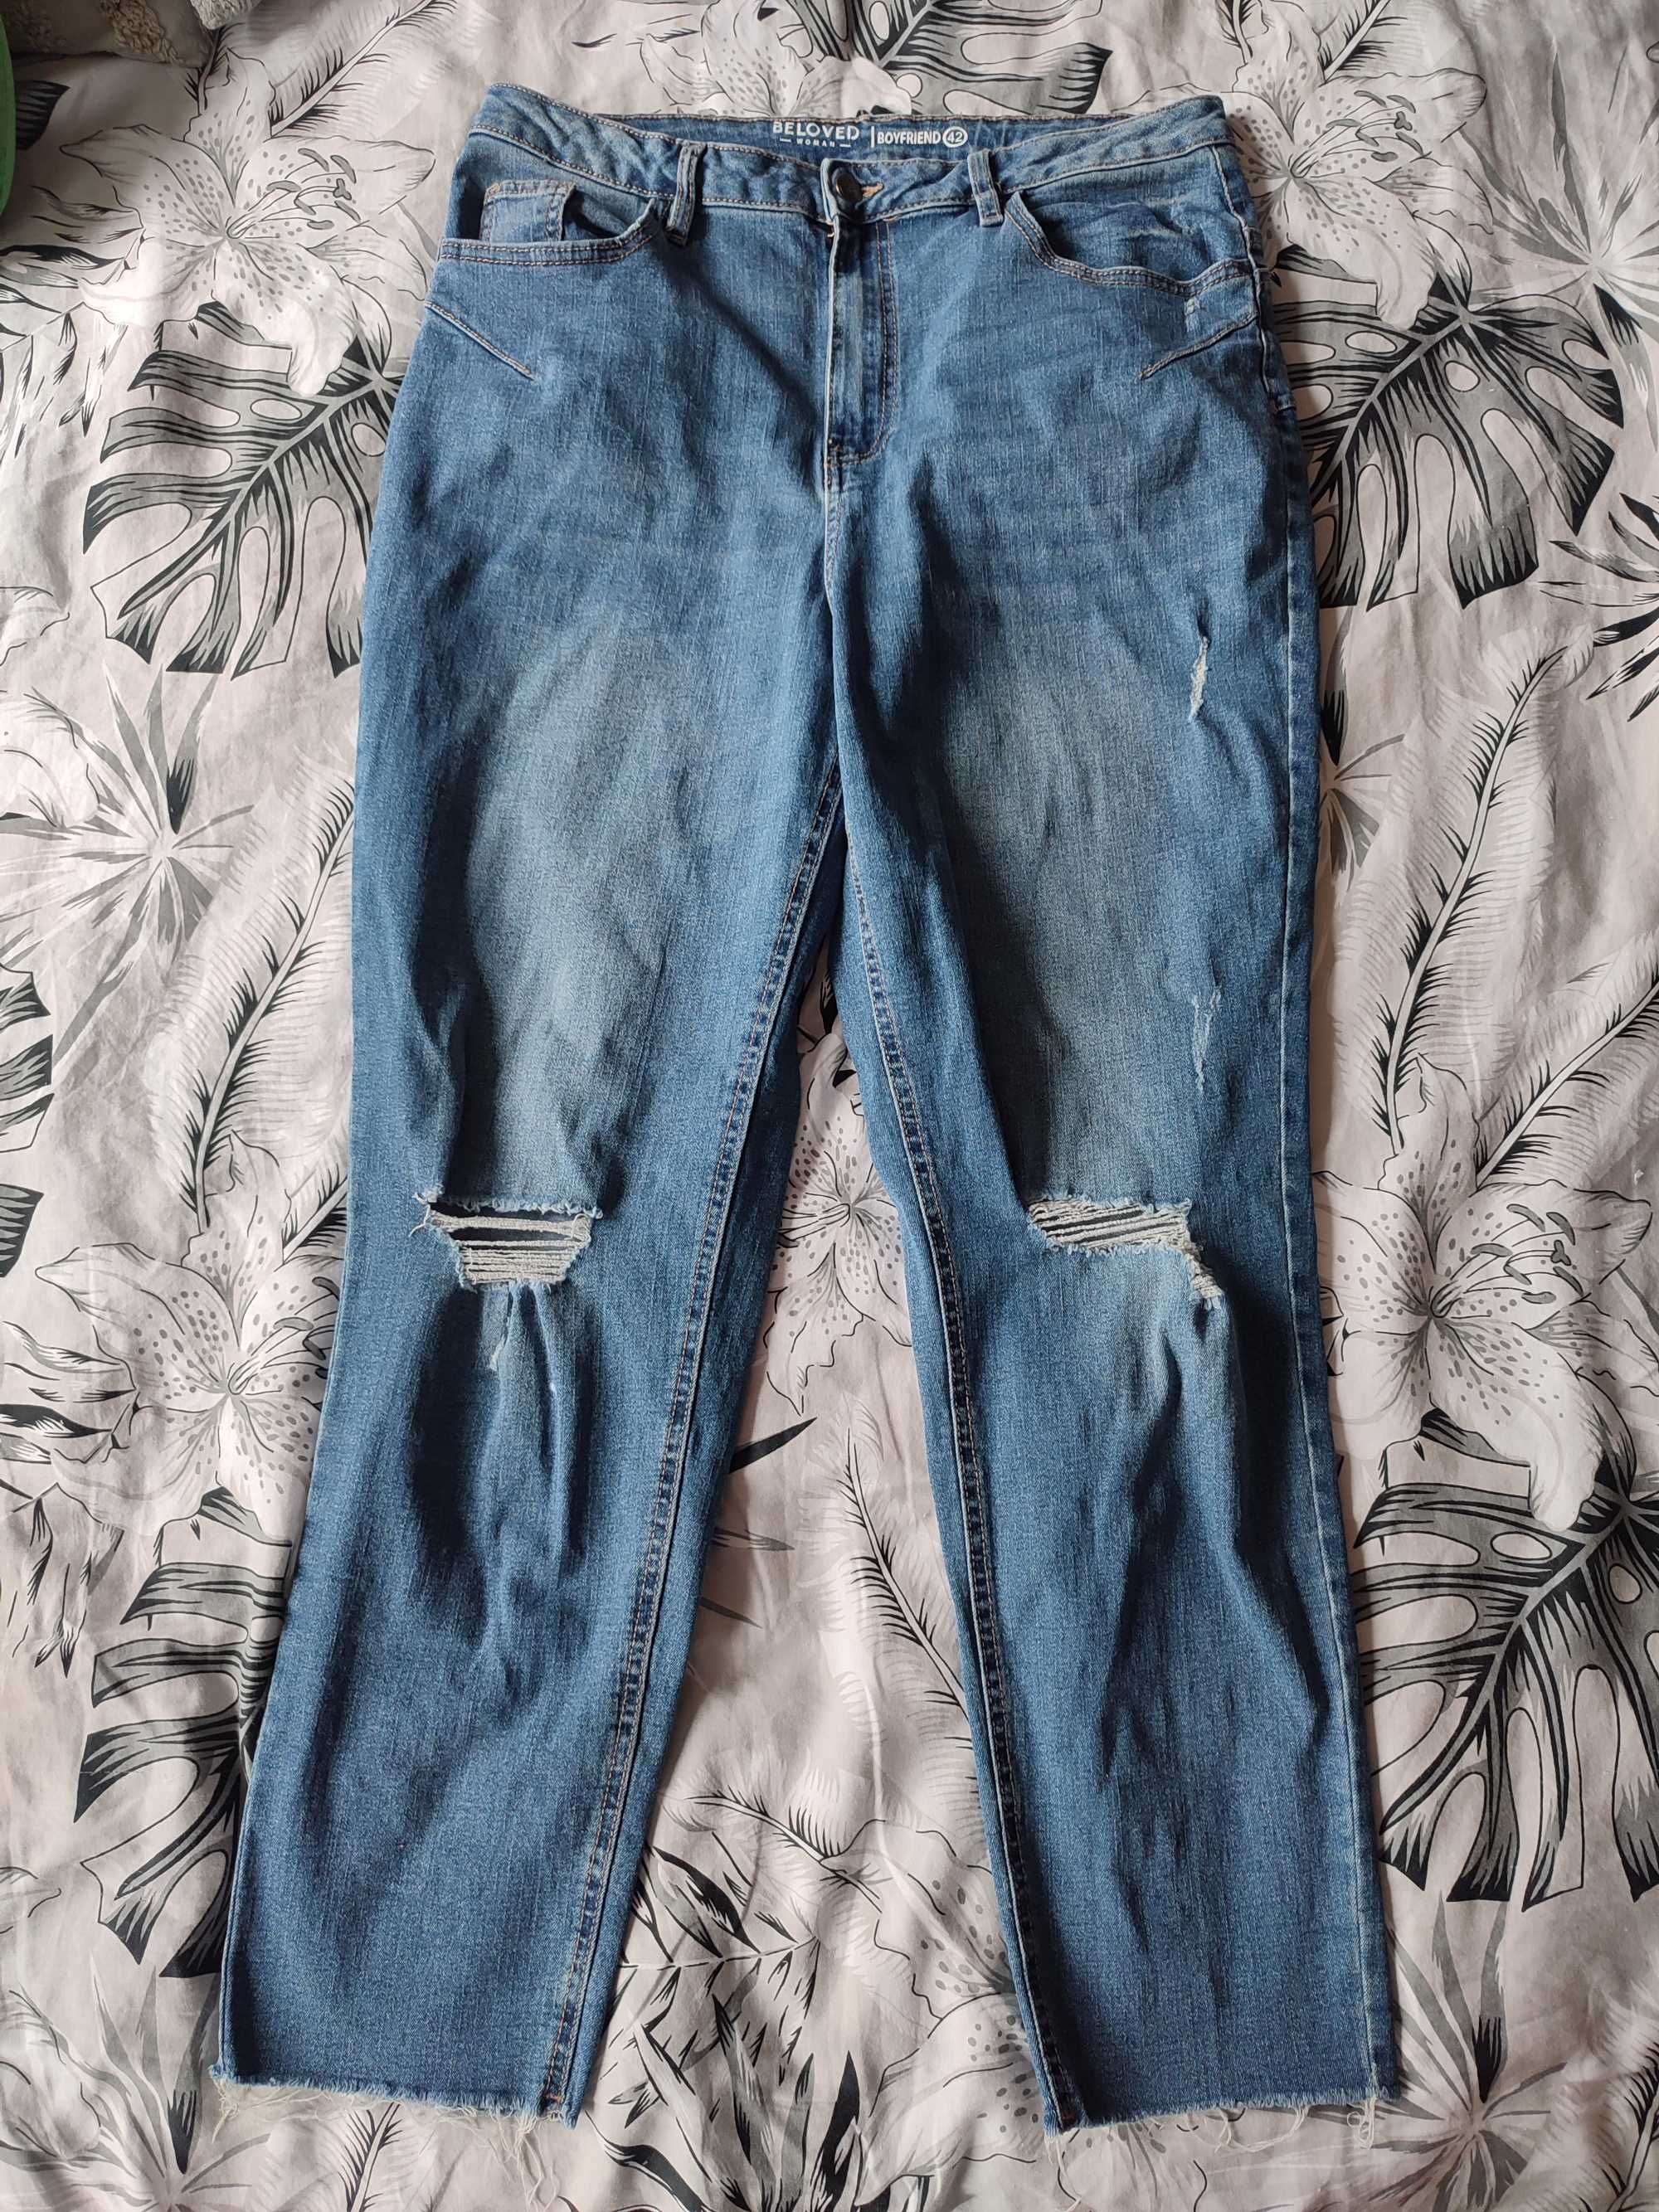 Spodnie damskie jeansowe boyfriend niebieskie z dziurami 42 XL